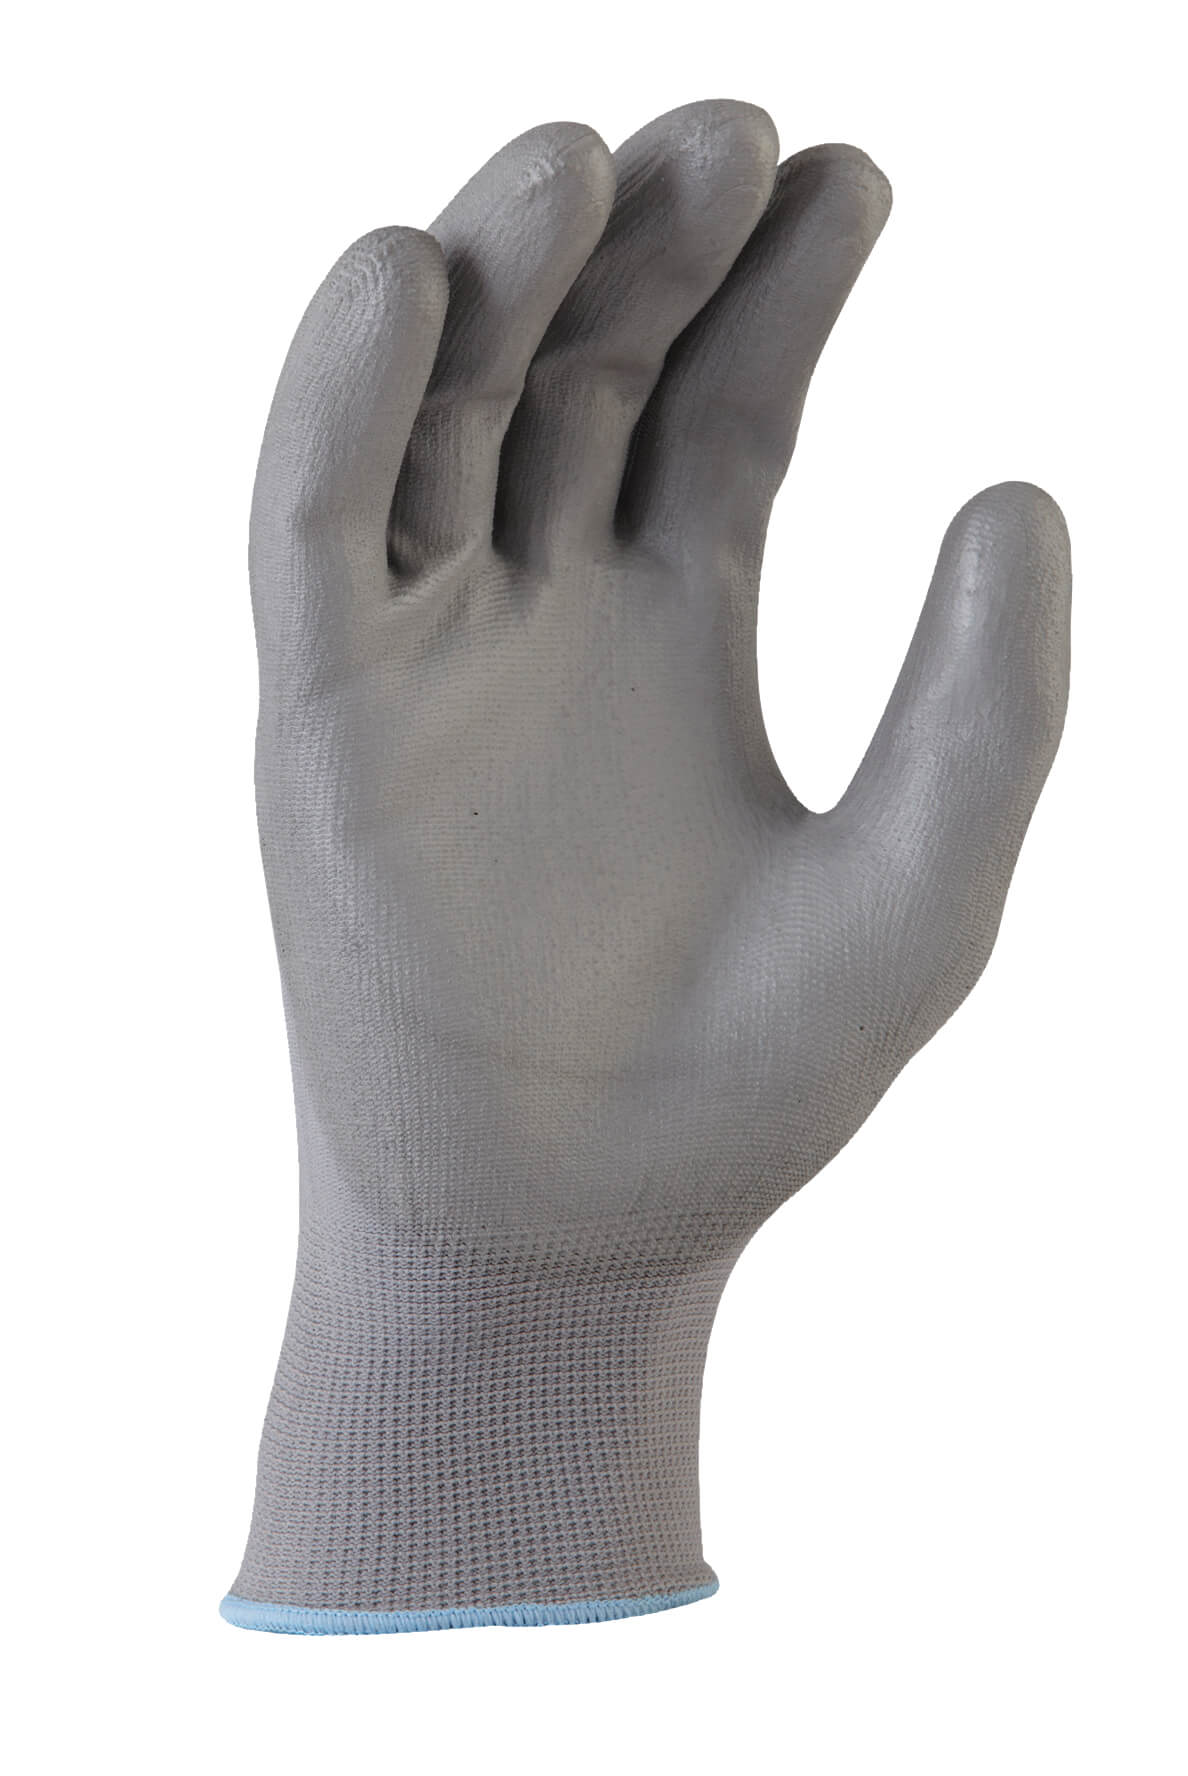 GNP136a ‘Grey Knight’ PU Coated Glove